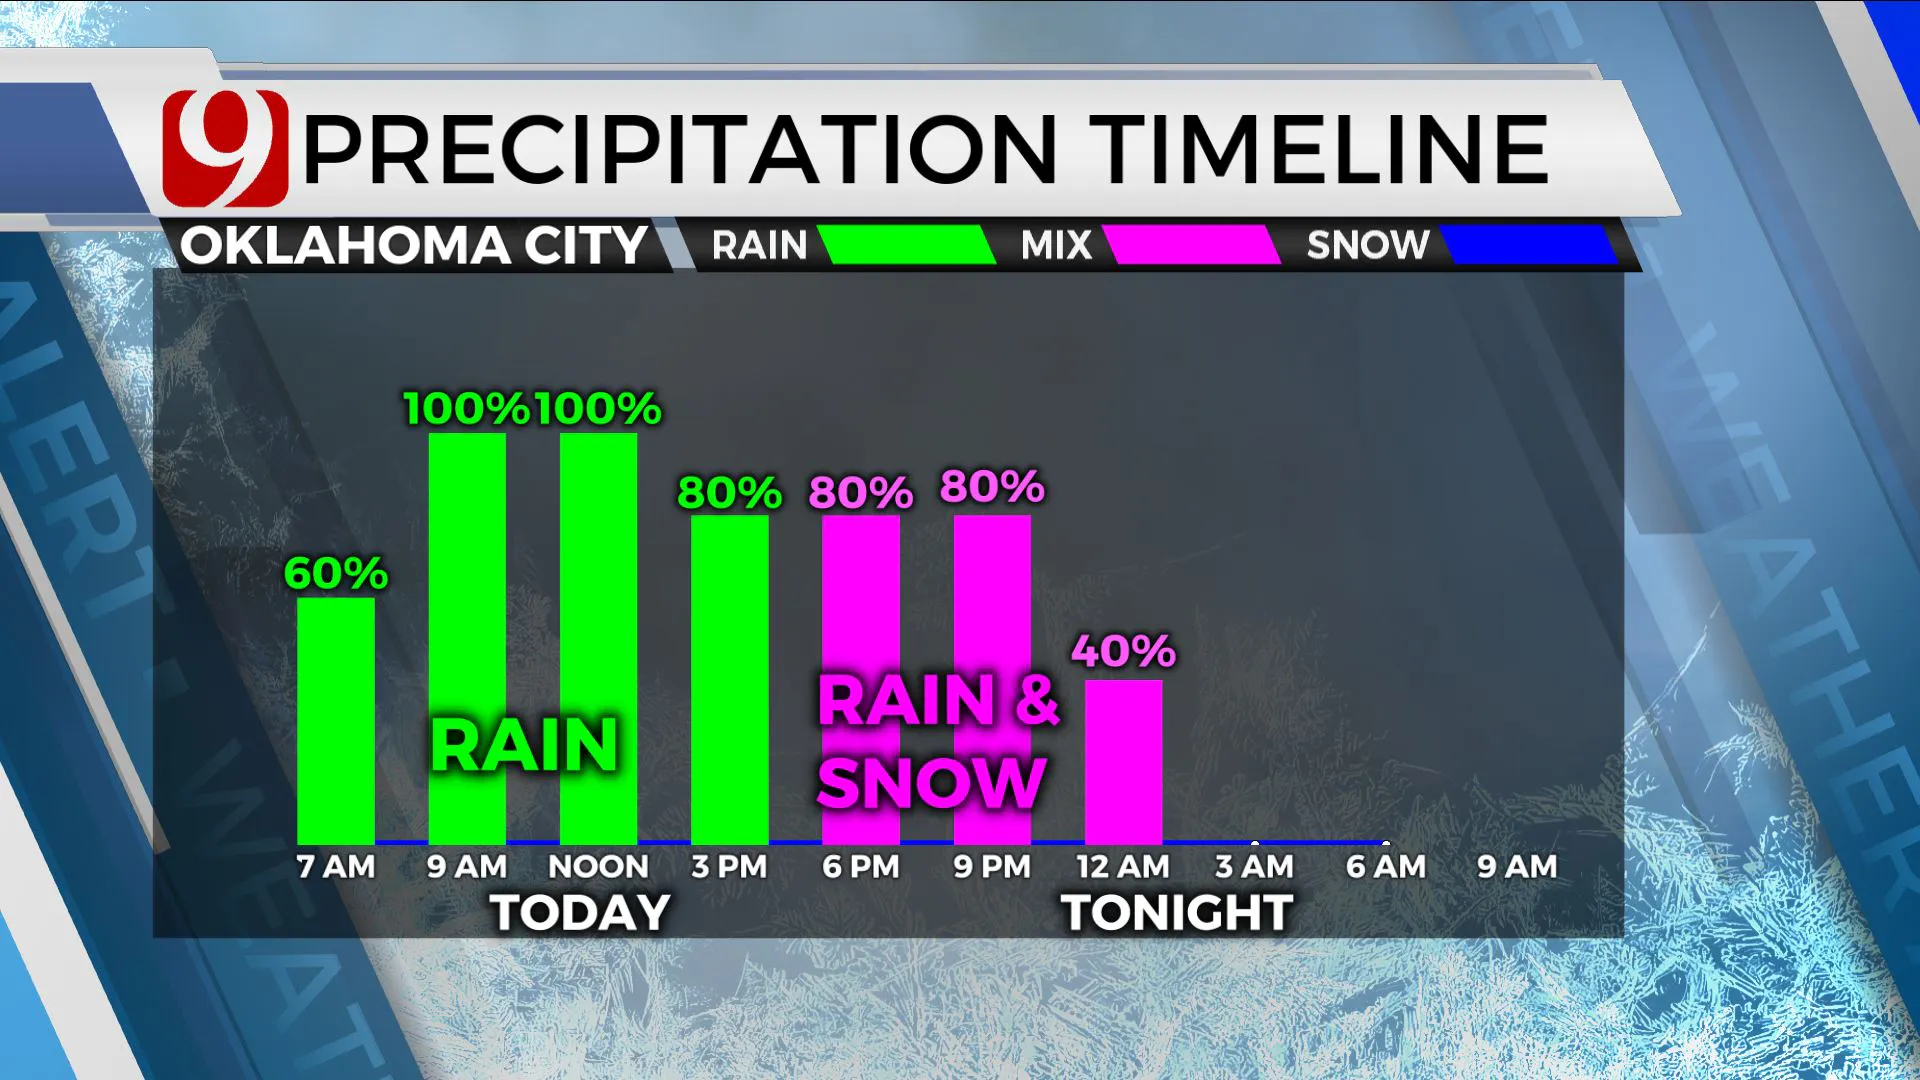 Precipitation timeline for Wednesday.